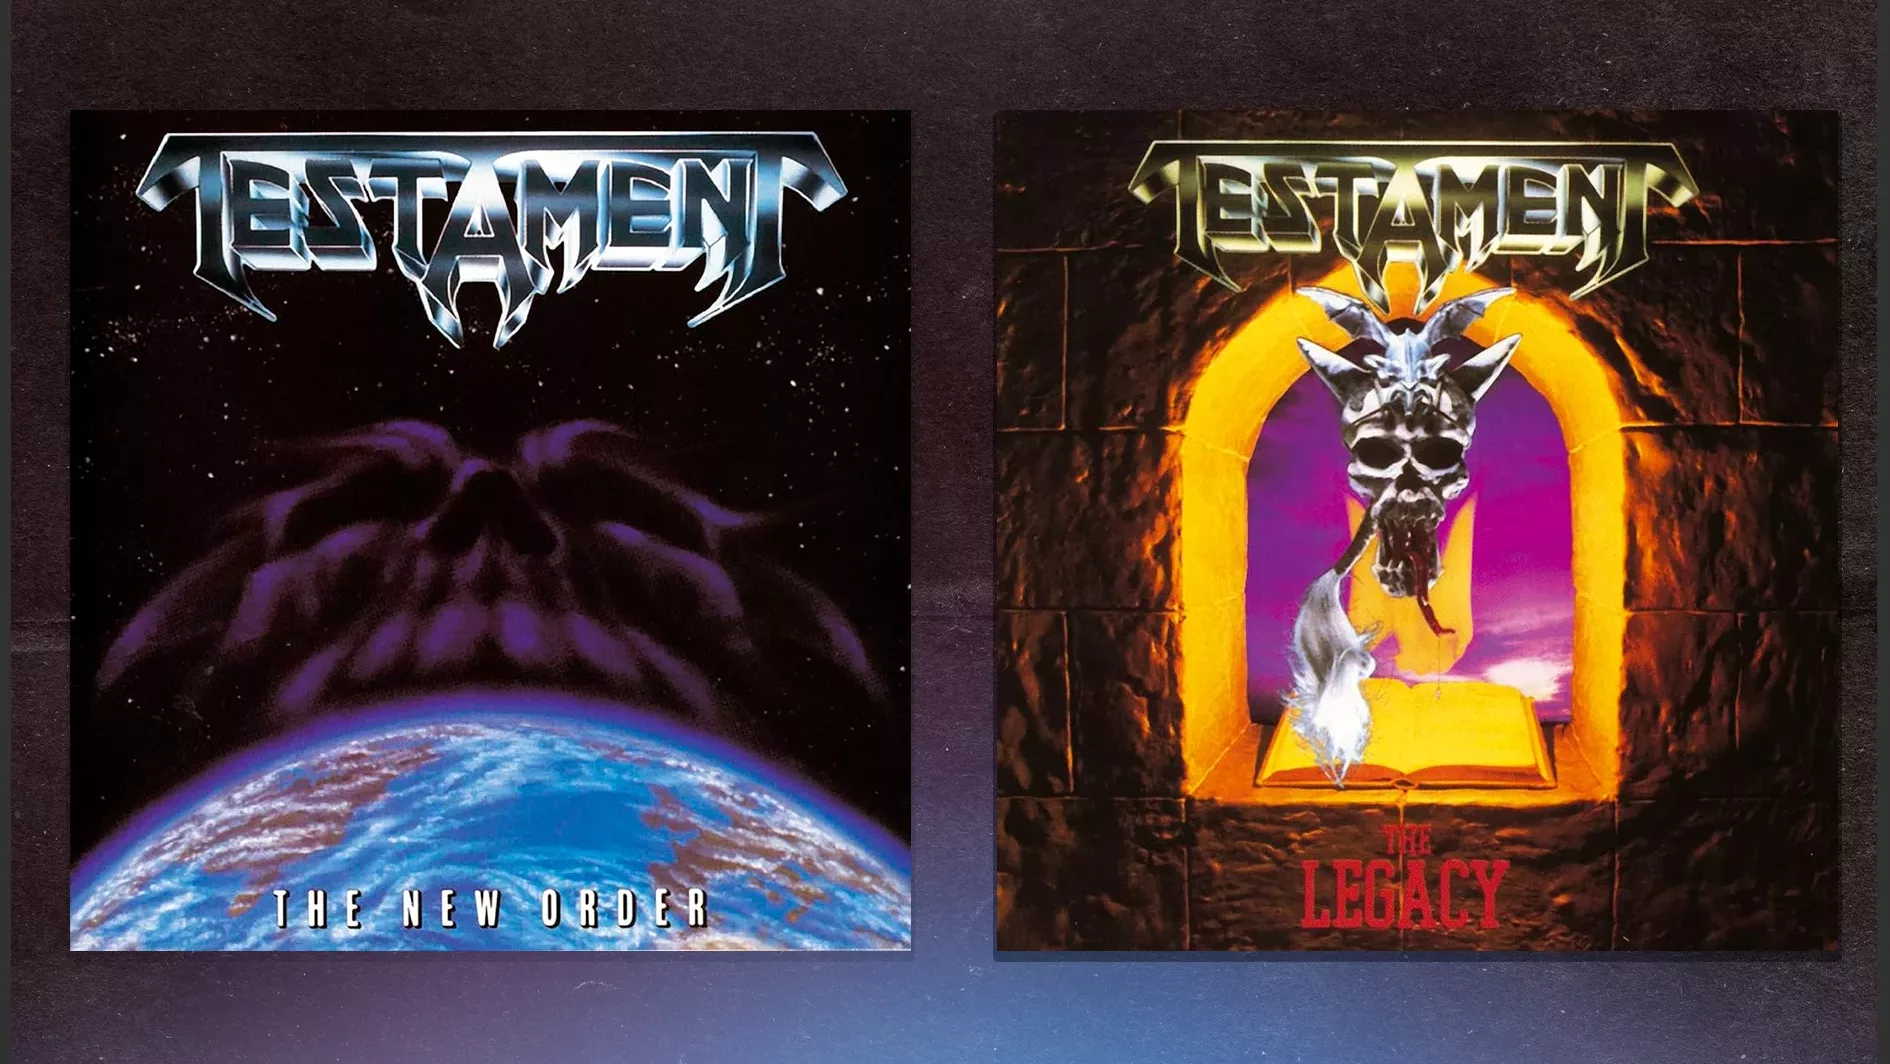 Capa dos álbuns do Testament